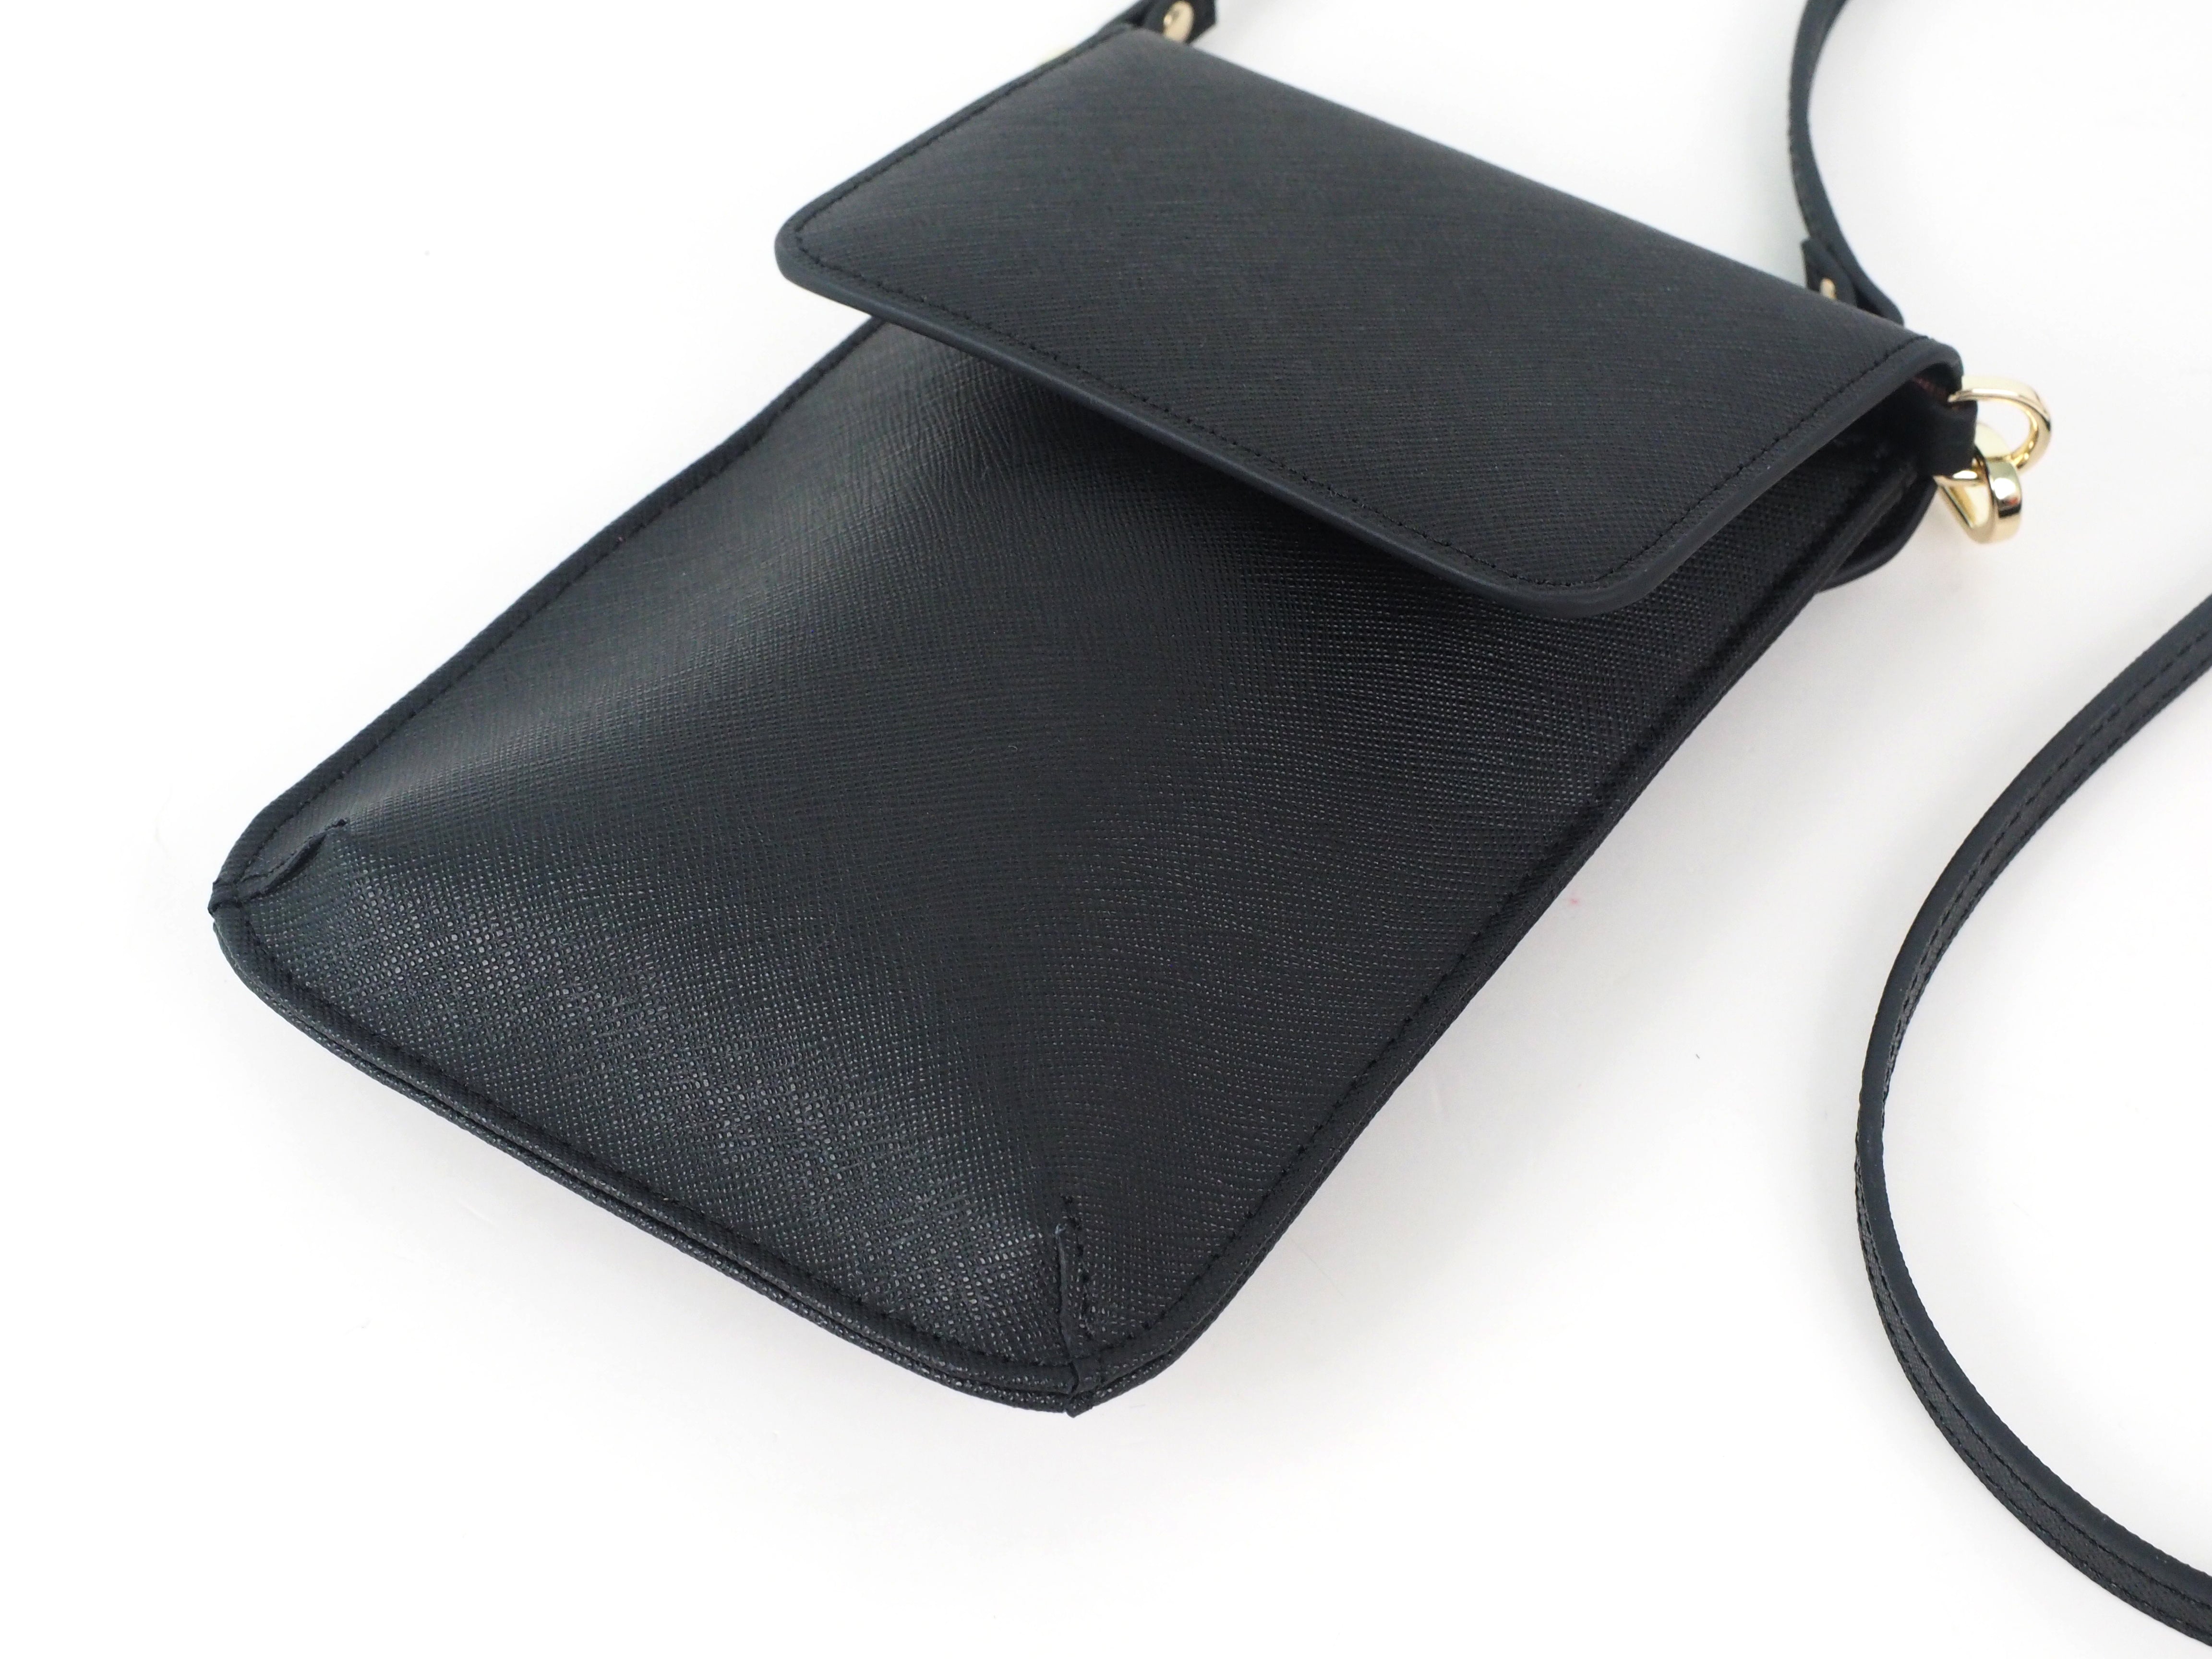 ESPRIT - Nylon Multi-Pouch Phone Bag at our online shop